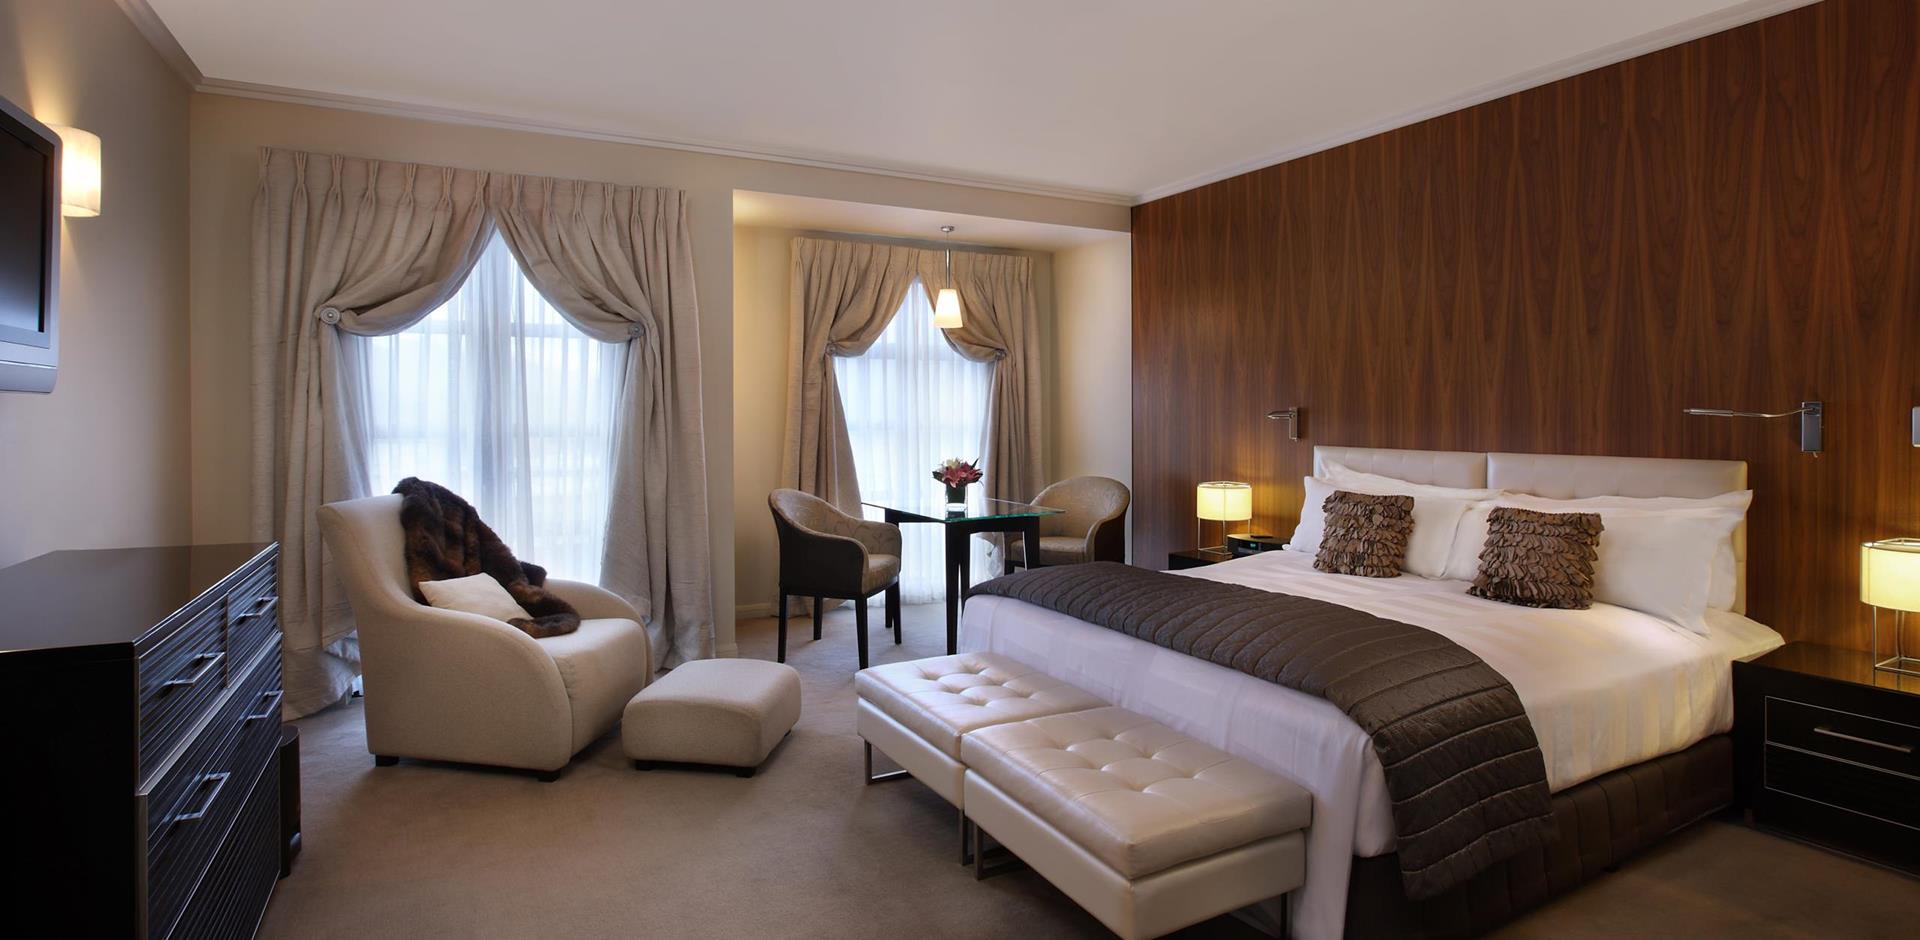 Bedroom, Sofitel Queenstown Hotel & Spa, New Zealand